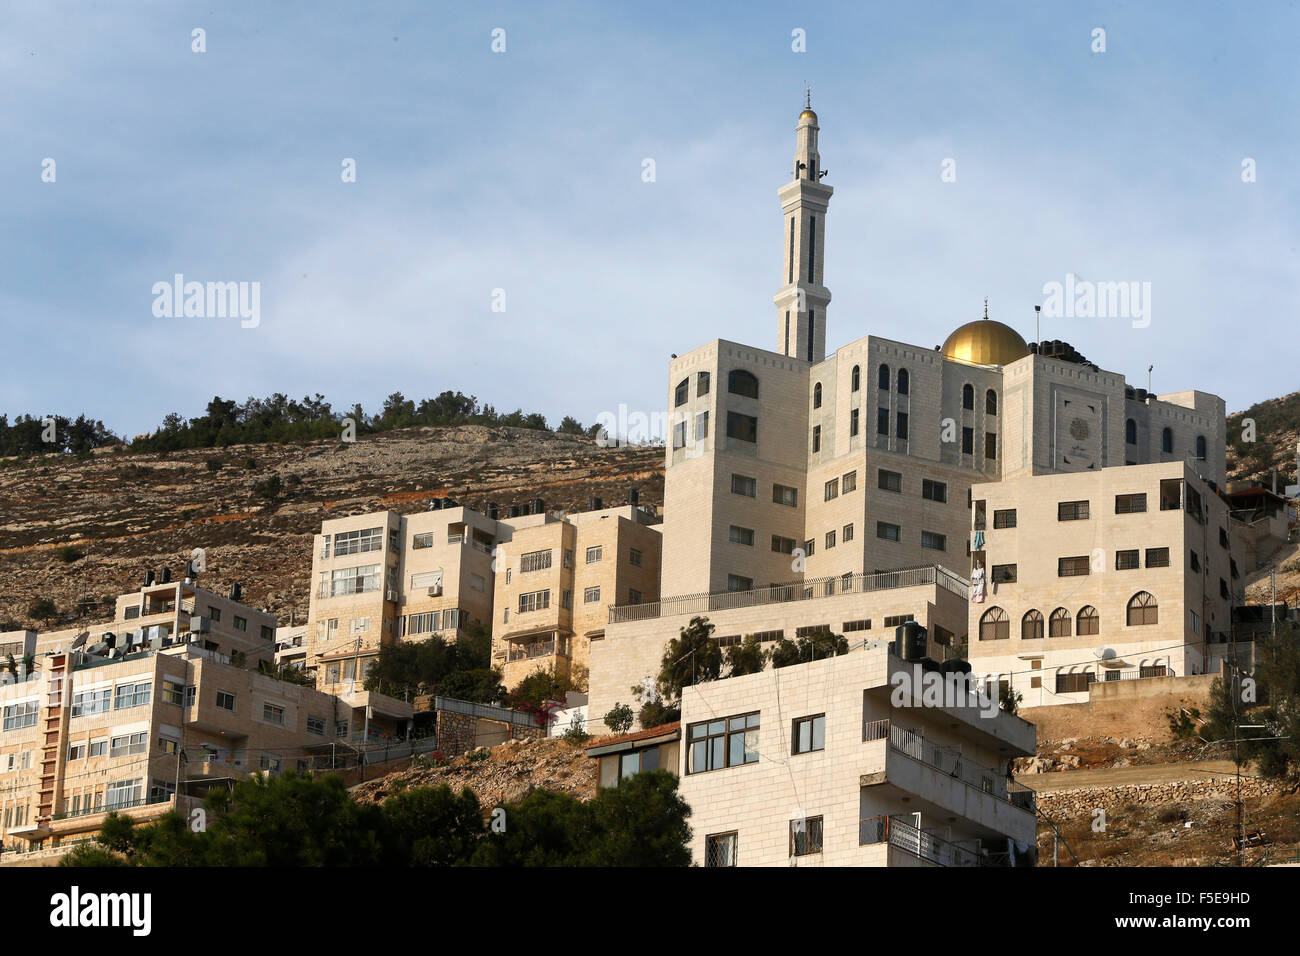 Mosquée et des bâtiments de la ville de Naplouse, en Cisjordanie, dans les territoires palestiniens, au Moyen-Orient Banque D'Images